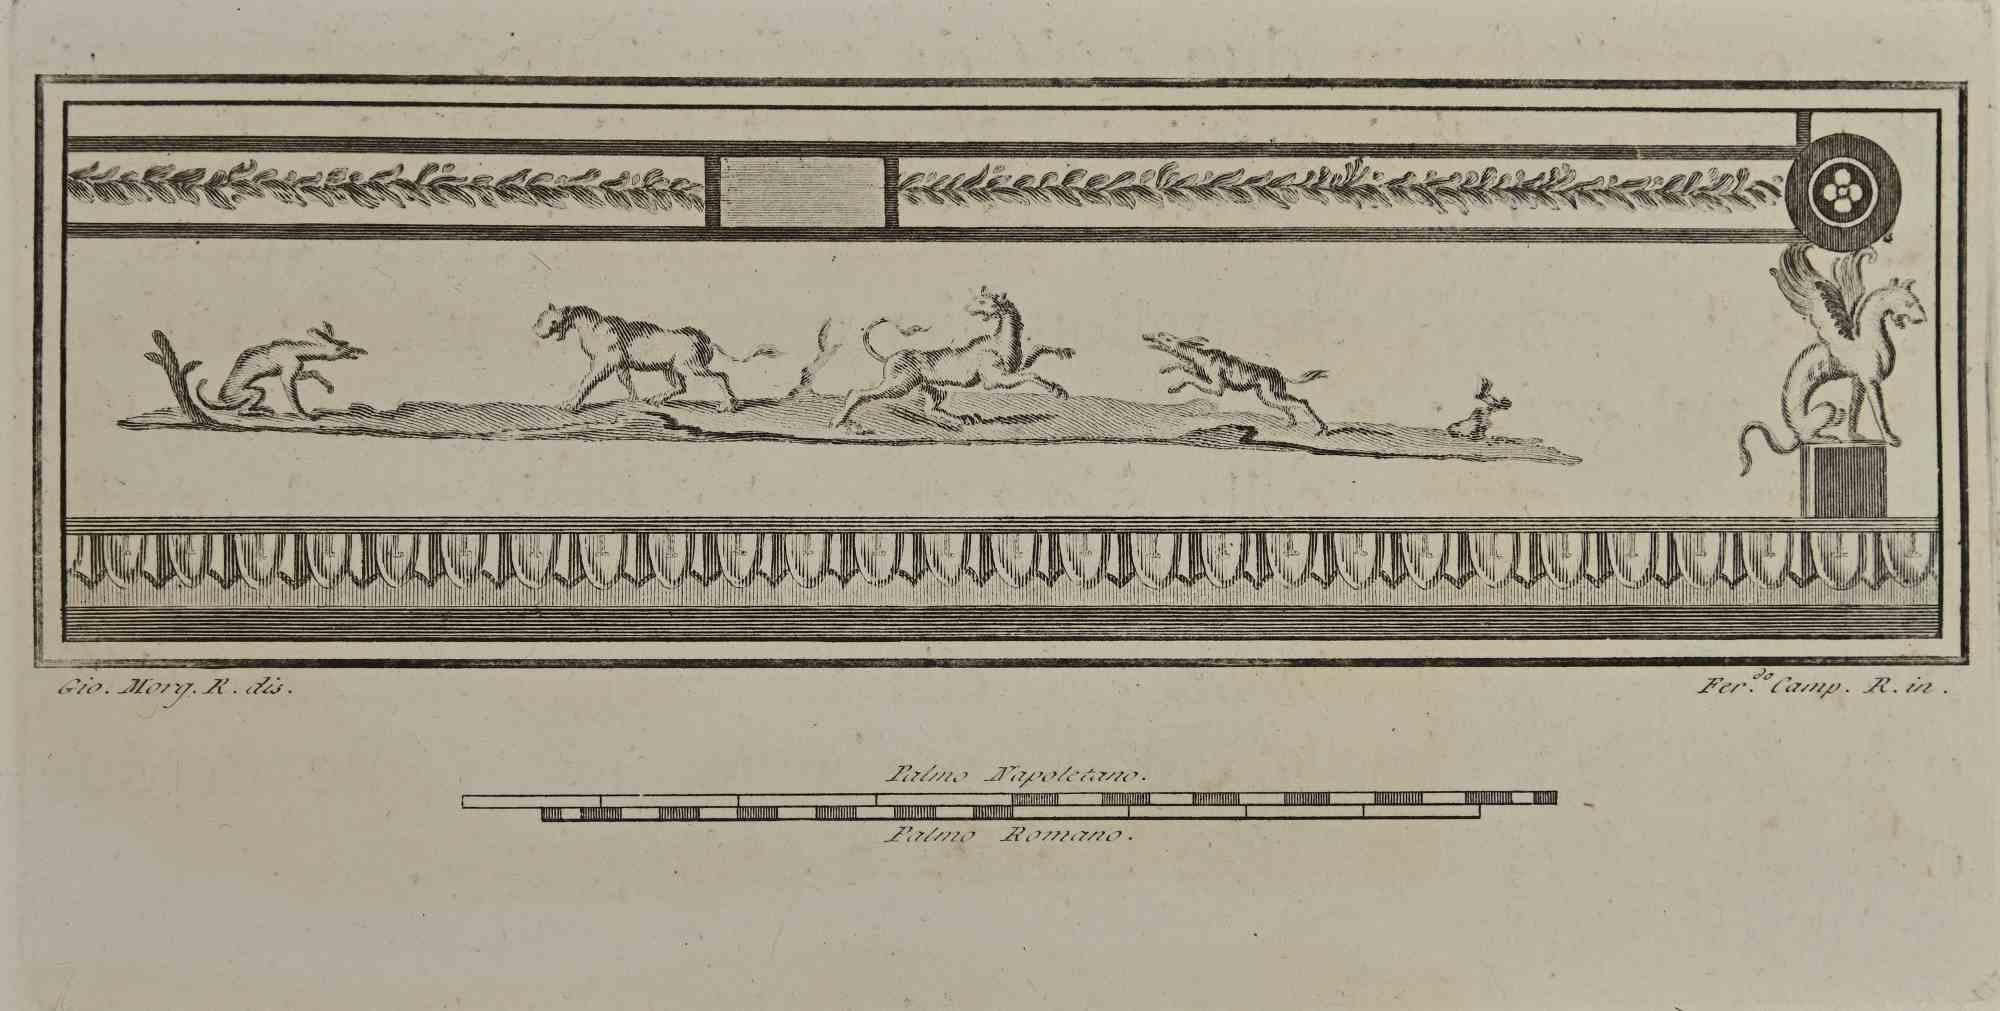 Römisches Fresko mit mythologischen Tieren aus den "Altertümern von Herculaneum" ist eine Radierung auf Papier von Ferdinando Campana aus dem 18. Jahrhundert.

Signiert auf der Platte.

Gute Bedingungen.

Die Radierung gehört zu der Druckserie